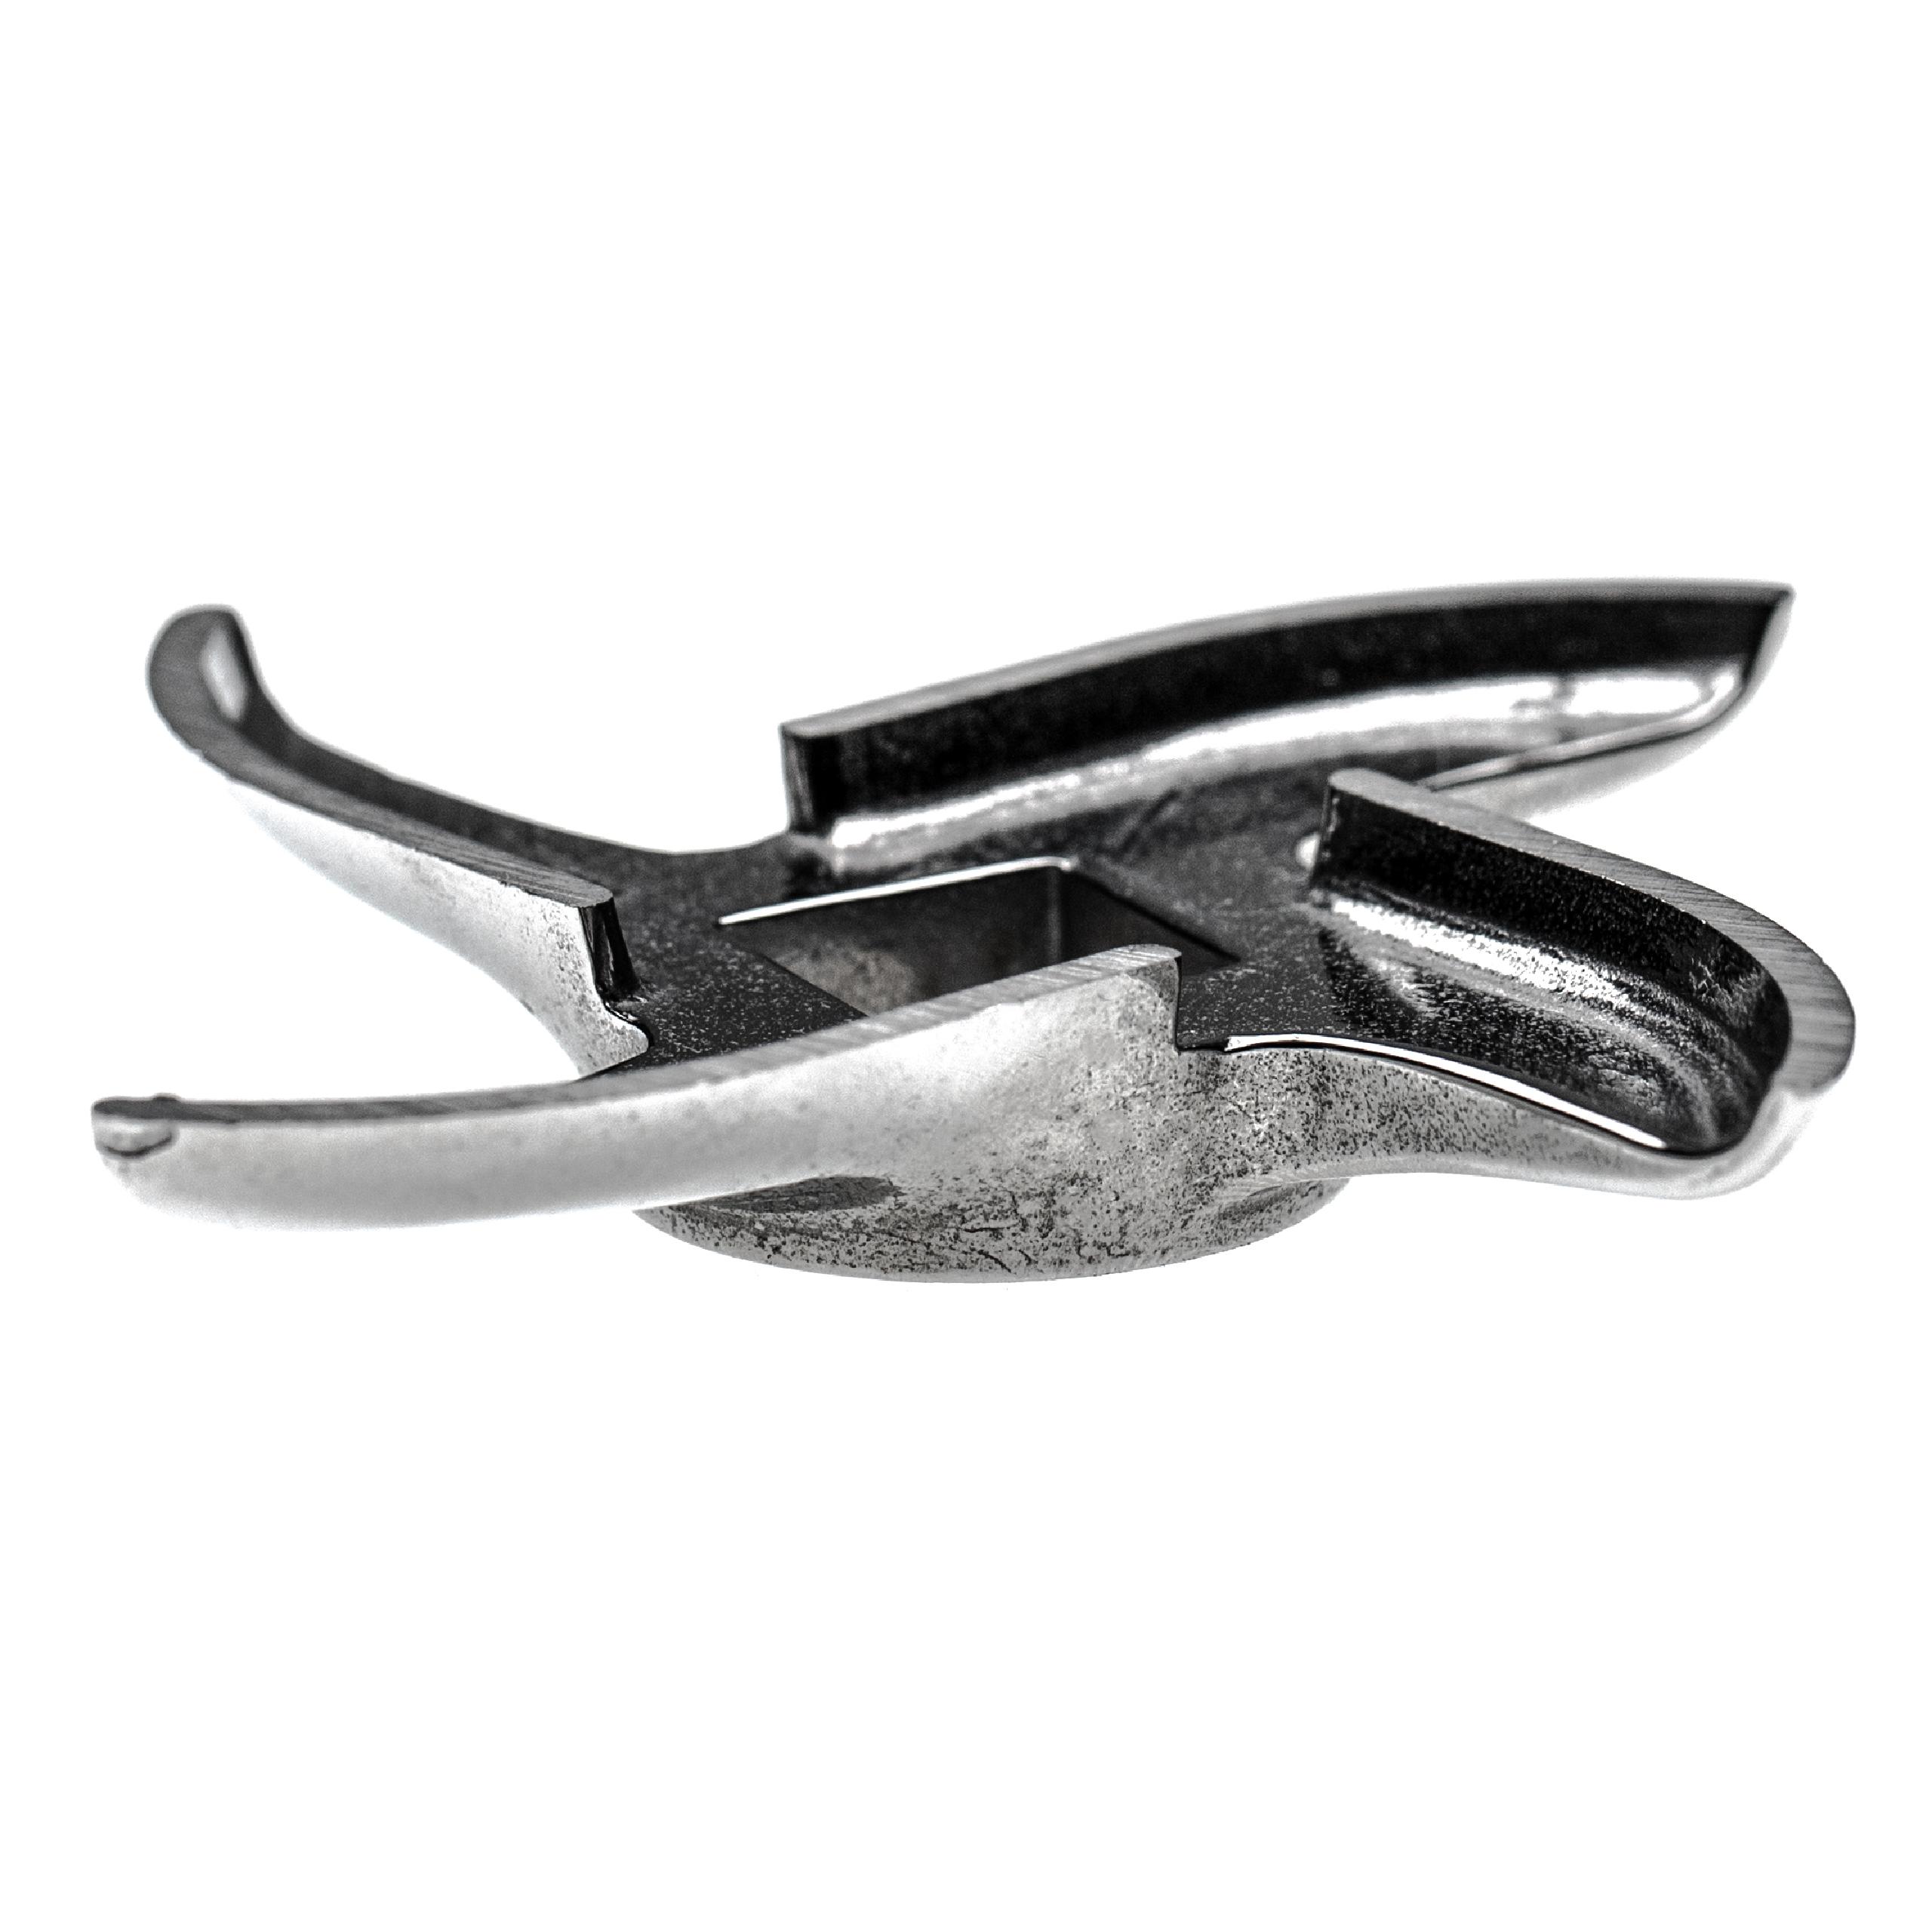 Couteau faucille taille 32, 15,1 x 15,1 mm quatre lames, compatible par ex avec hachoirs ADE, Caso, Fama, KBS